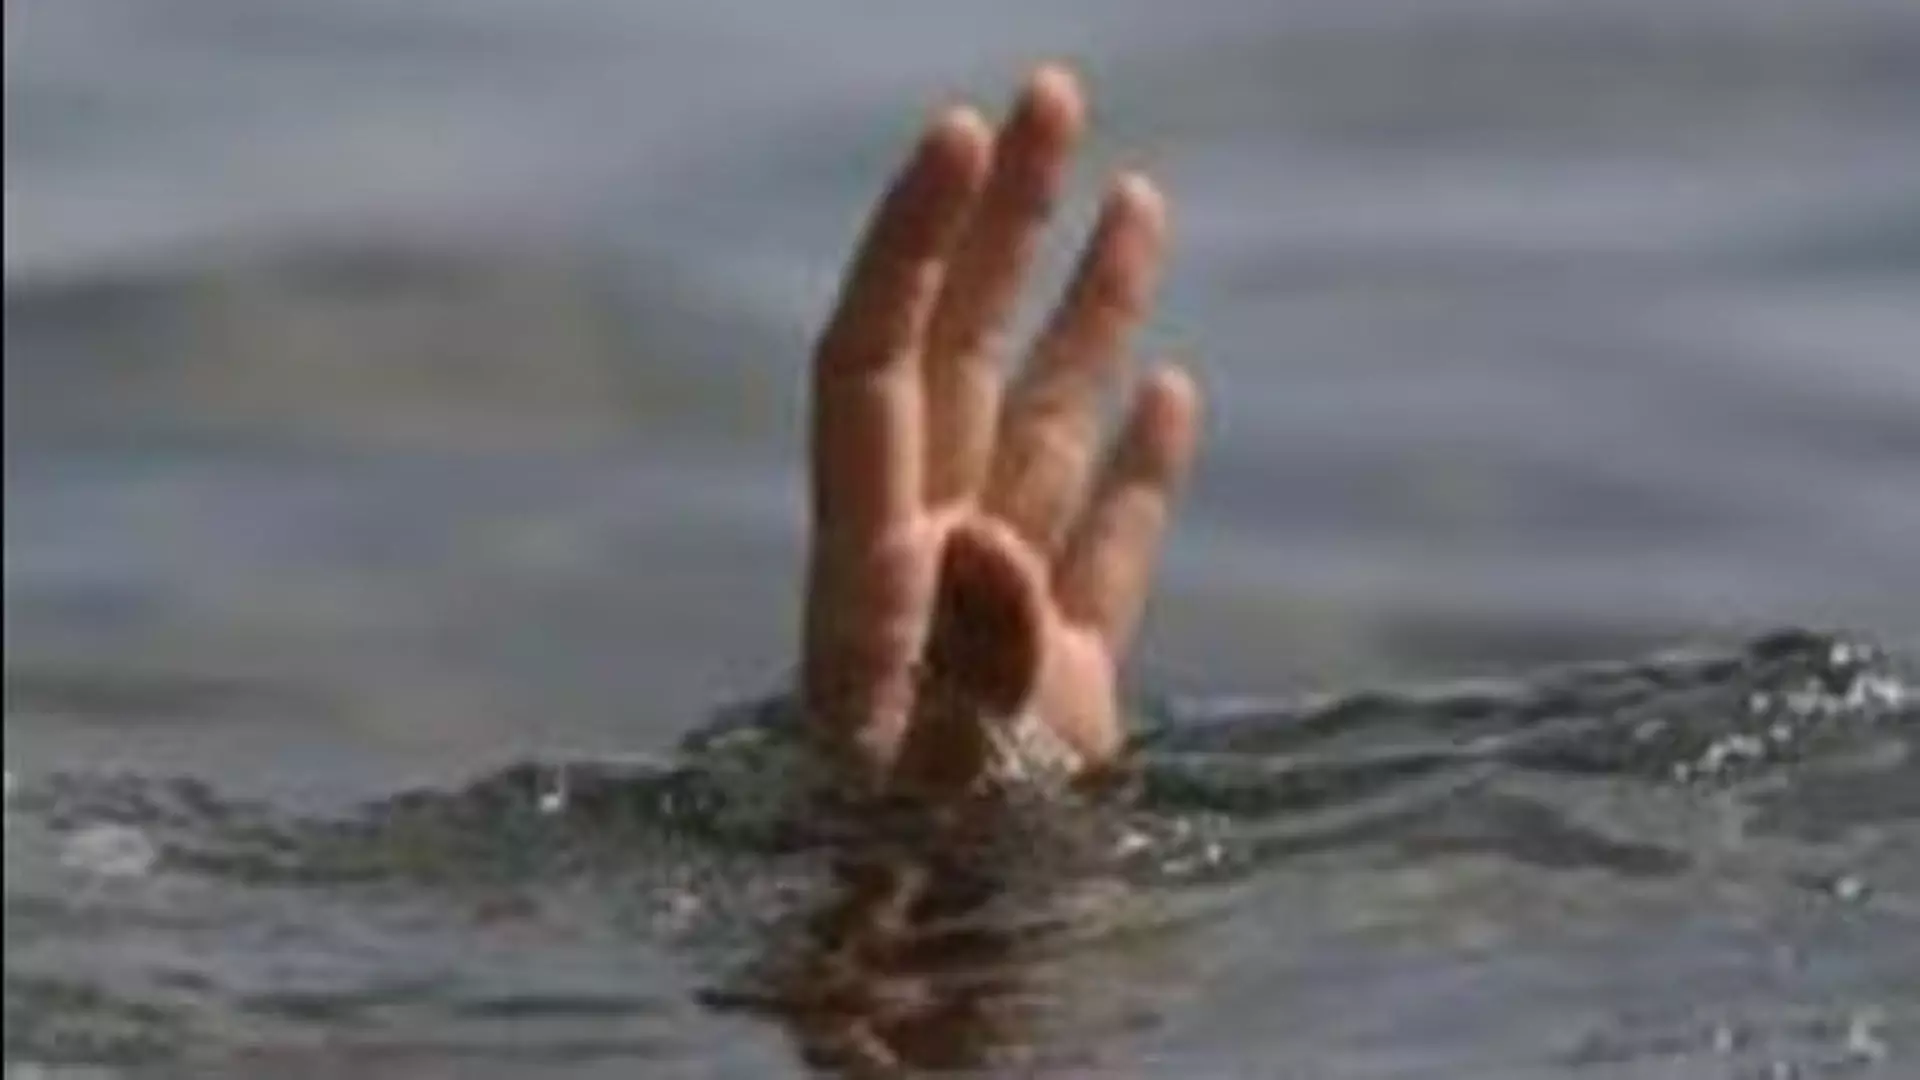 MUMBAI: महाराष्ट्र के छात्रों ने तैराकी निषेध अवधि के दौरान रूसी नदी में प्रवेश किया